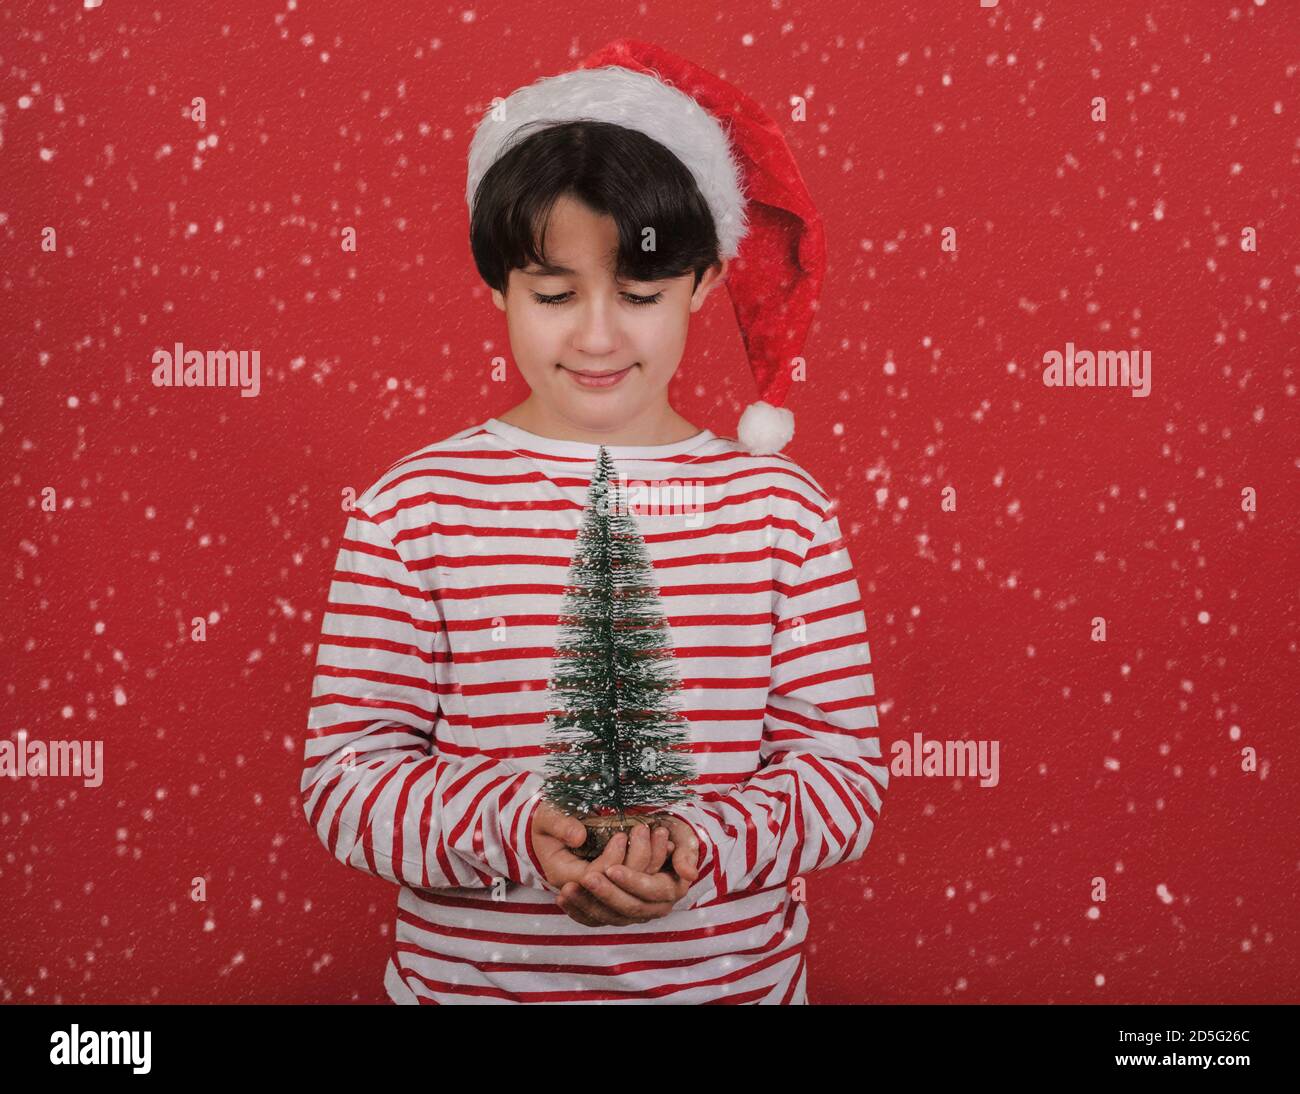 Joyeux Noël, un enfant portant un chapeau de Noël avec un petit arbre de noël entre ses mains sur fond rouge Banque D'Images